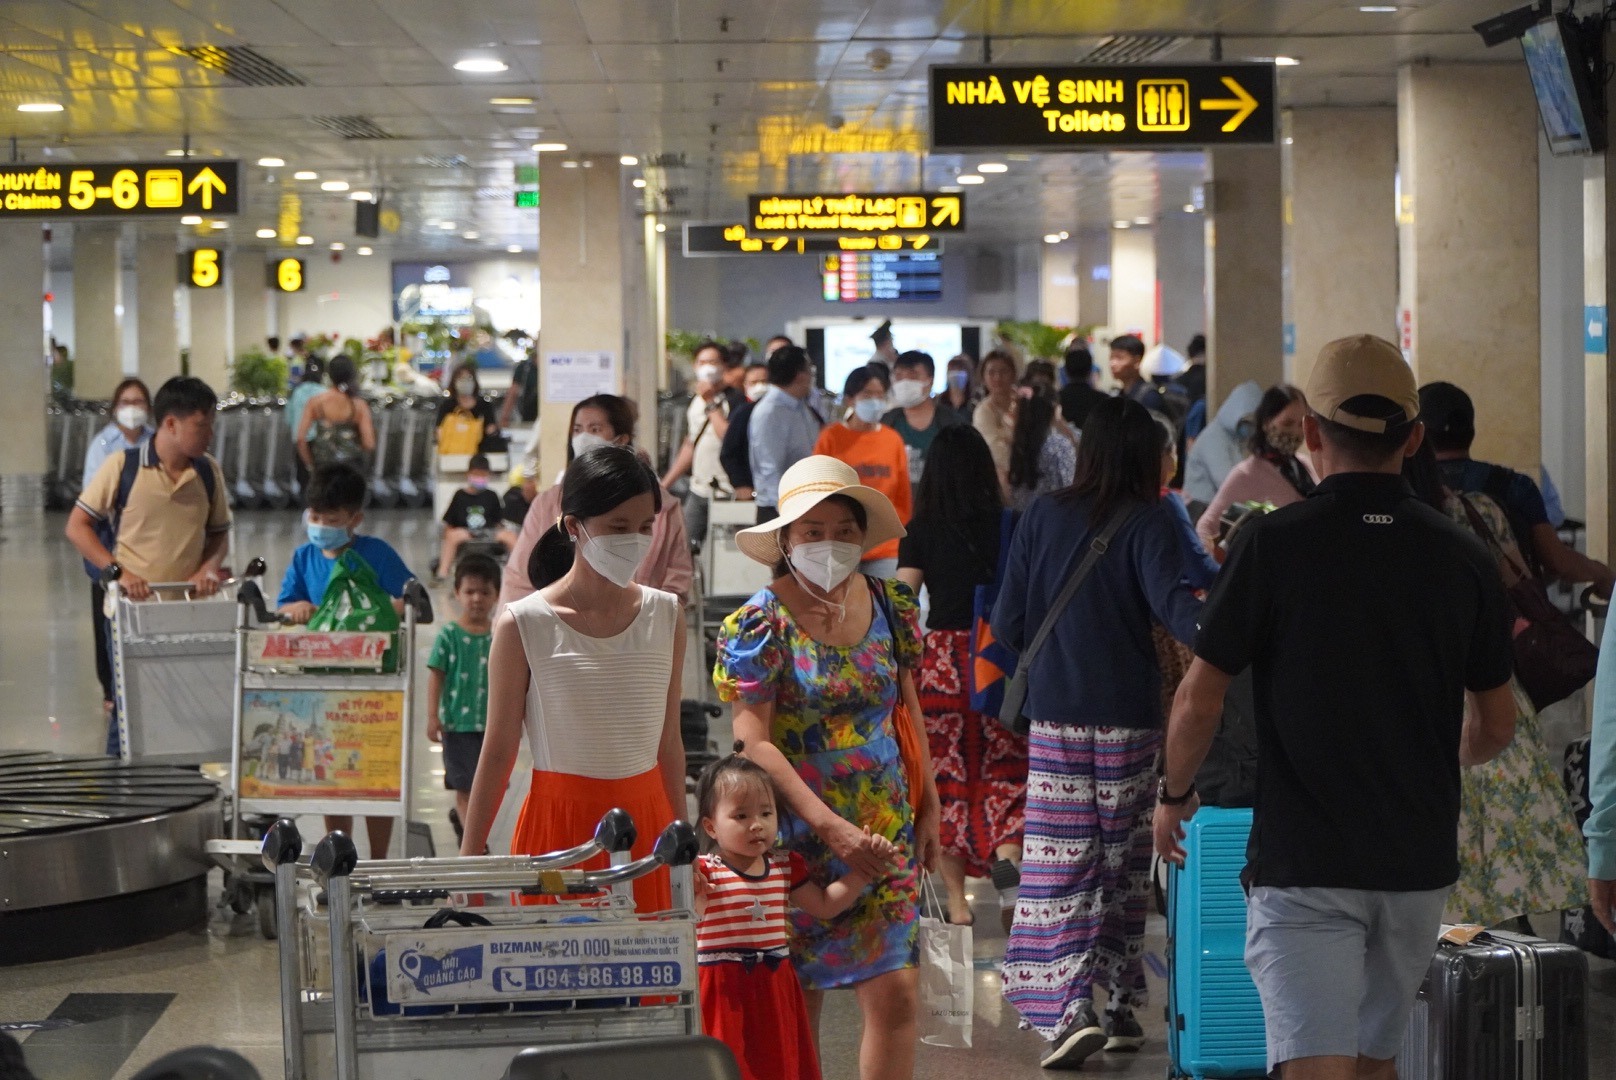 Khác với tình trạng vắng vẻ ở nhiều nơi, sân bay Tân Sơn Nhất (TPHCM) ghi nhận tình trạng đông đúc nhưng không chen lấn. Nhiều hành khách vẫn phải bay trên không 30 phút để đợi đáp chuyến bay.